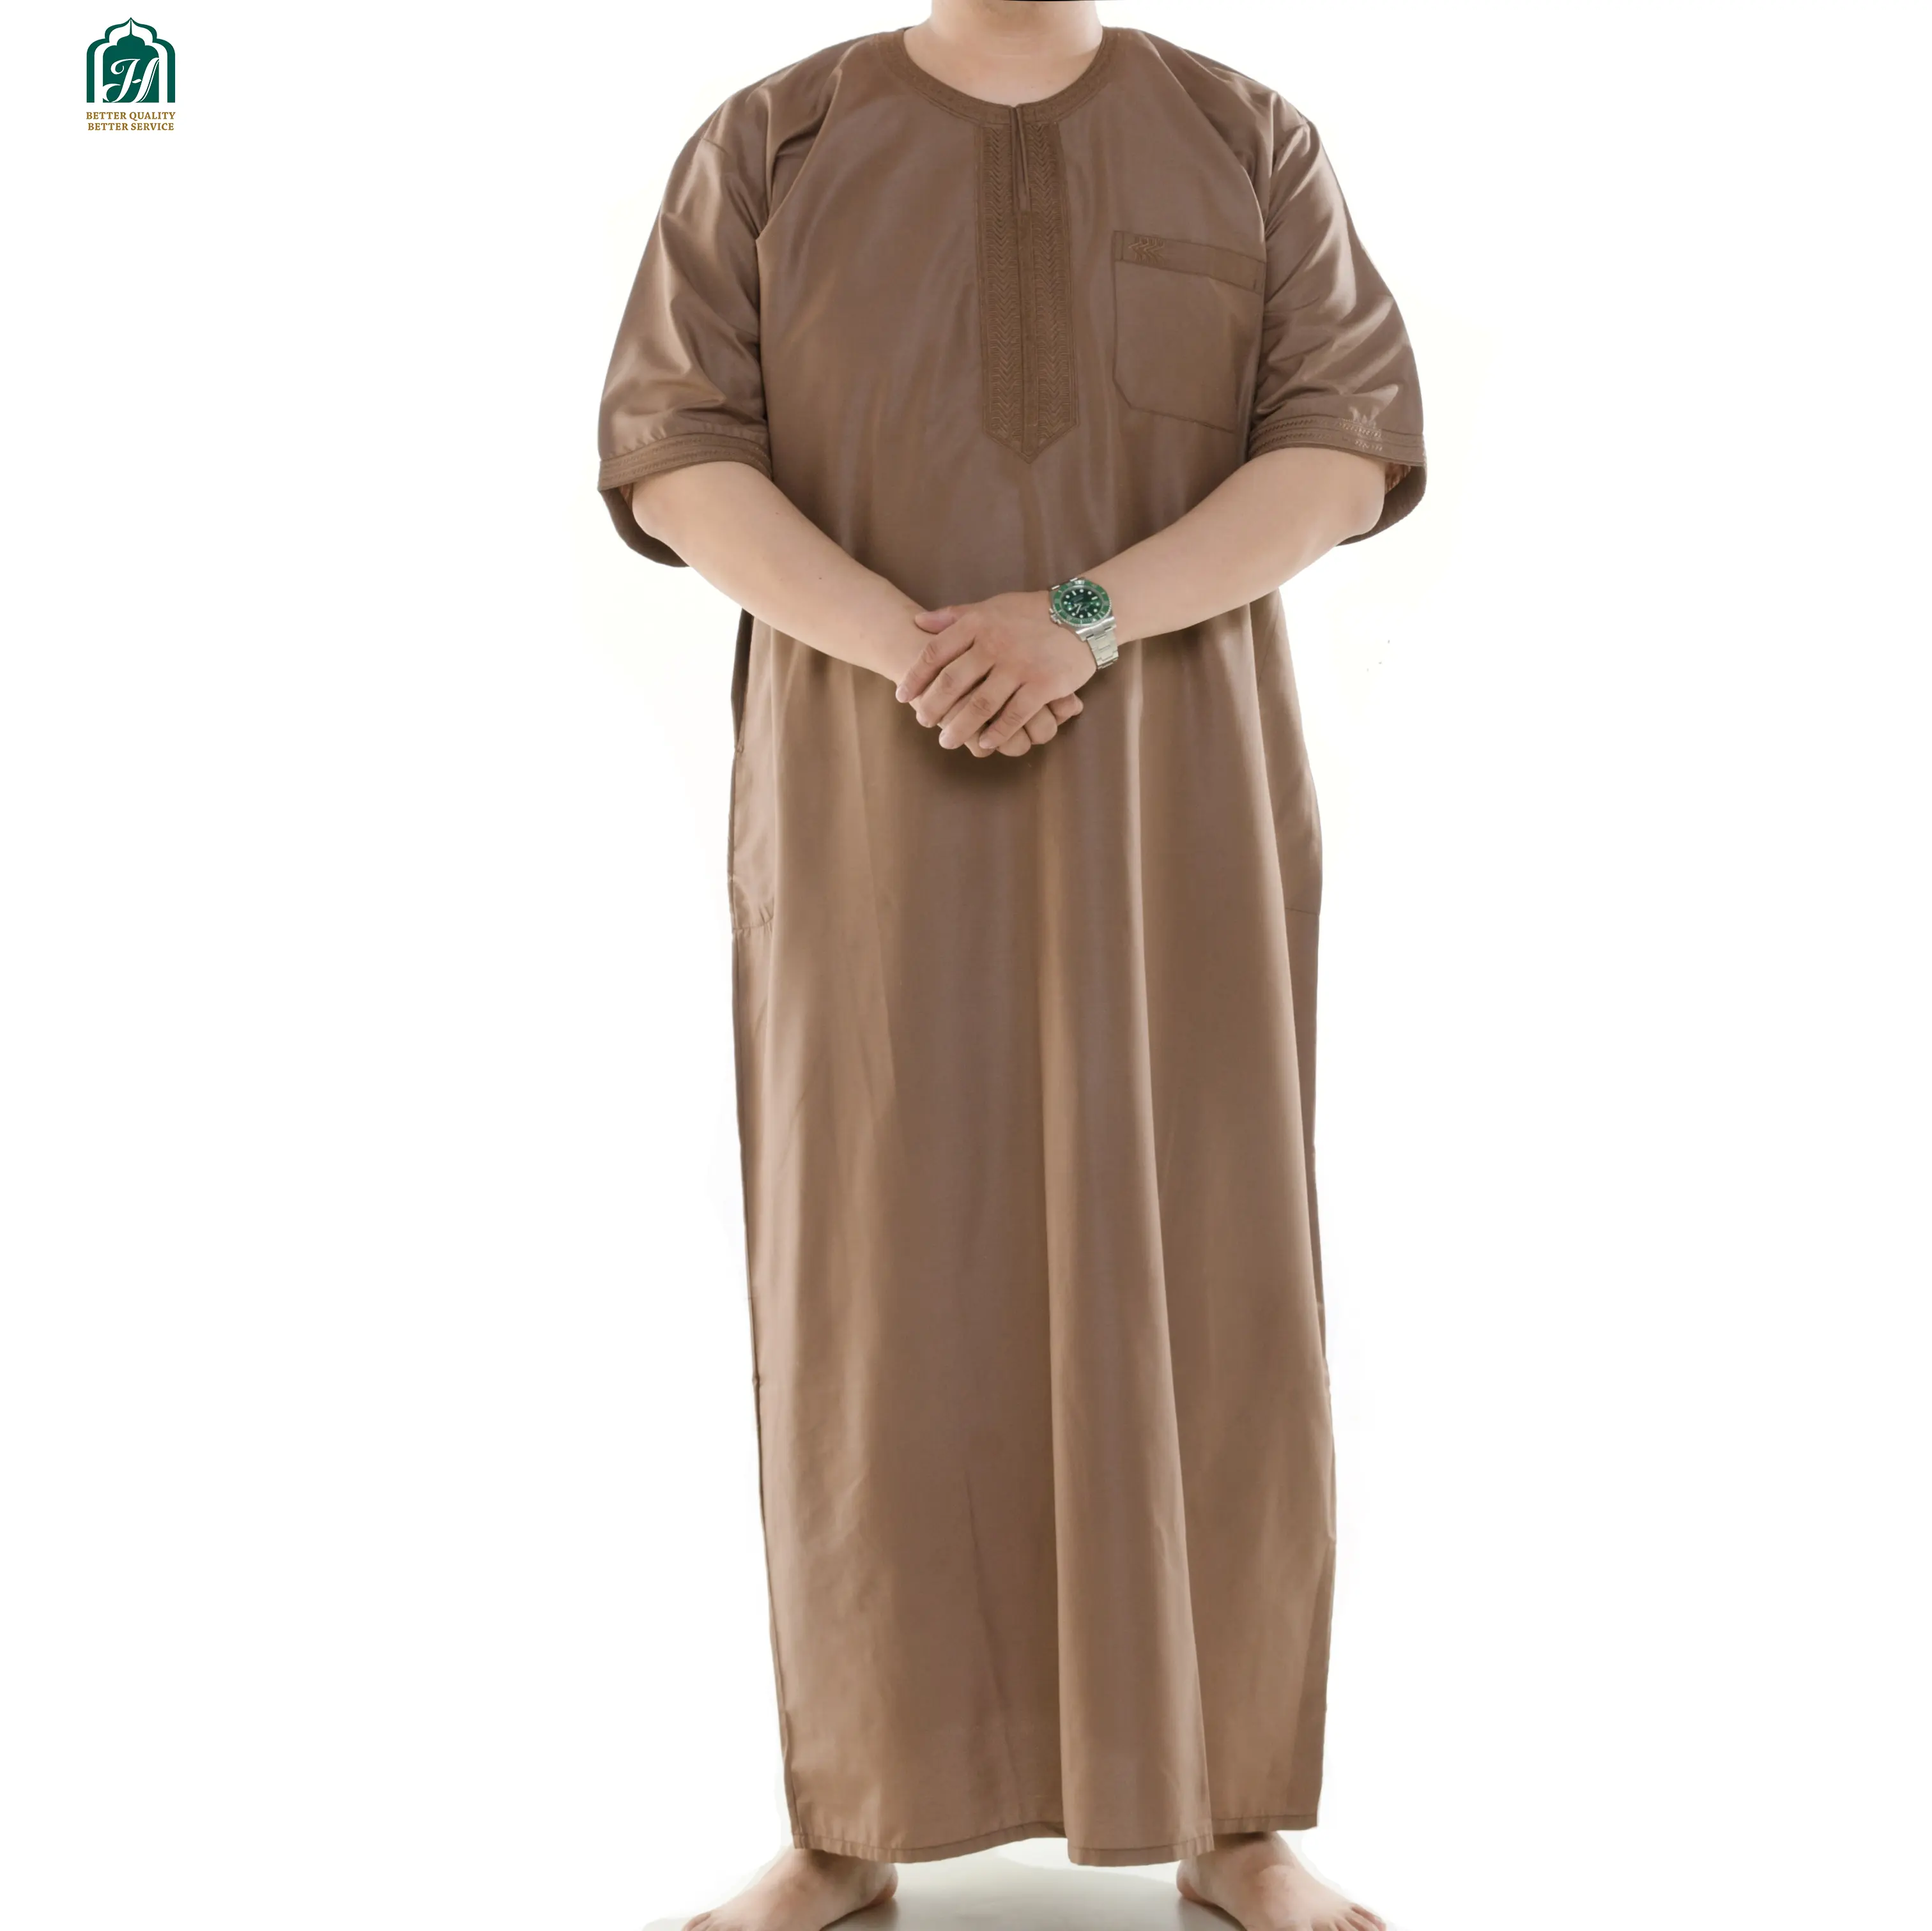 Gamis Pria Desain Klasik Terbaru Putih. Thobe 9005 Kuwii Musim Gugur Desain Baru Jubah Muslim Bordir Pria